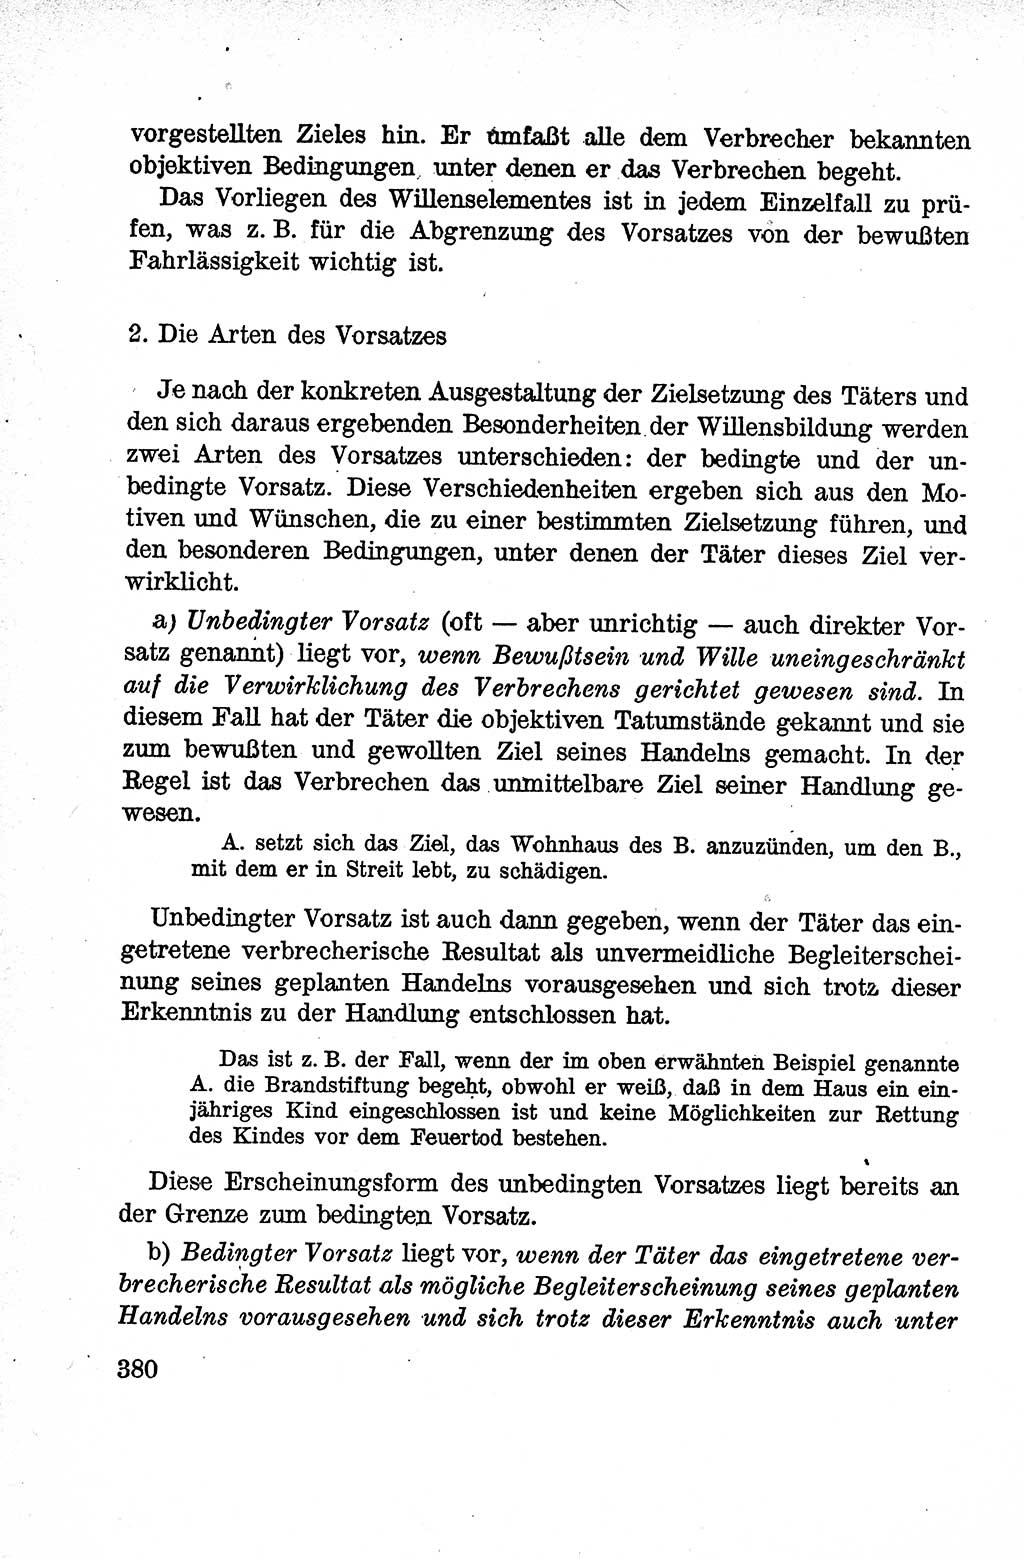 Lehrbuch des Strafrechts der Deutschen Demokratischen Republik (DDR), Allgemeiner Teil 1959, Seite 380 (Lb. Strafr. DDR AT 1959, S. 380)